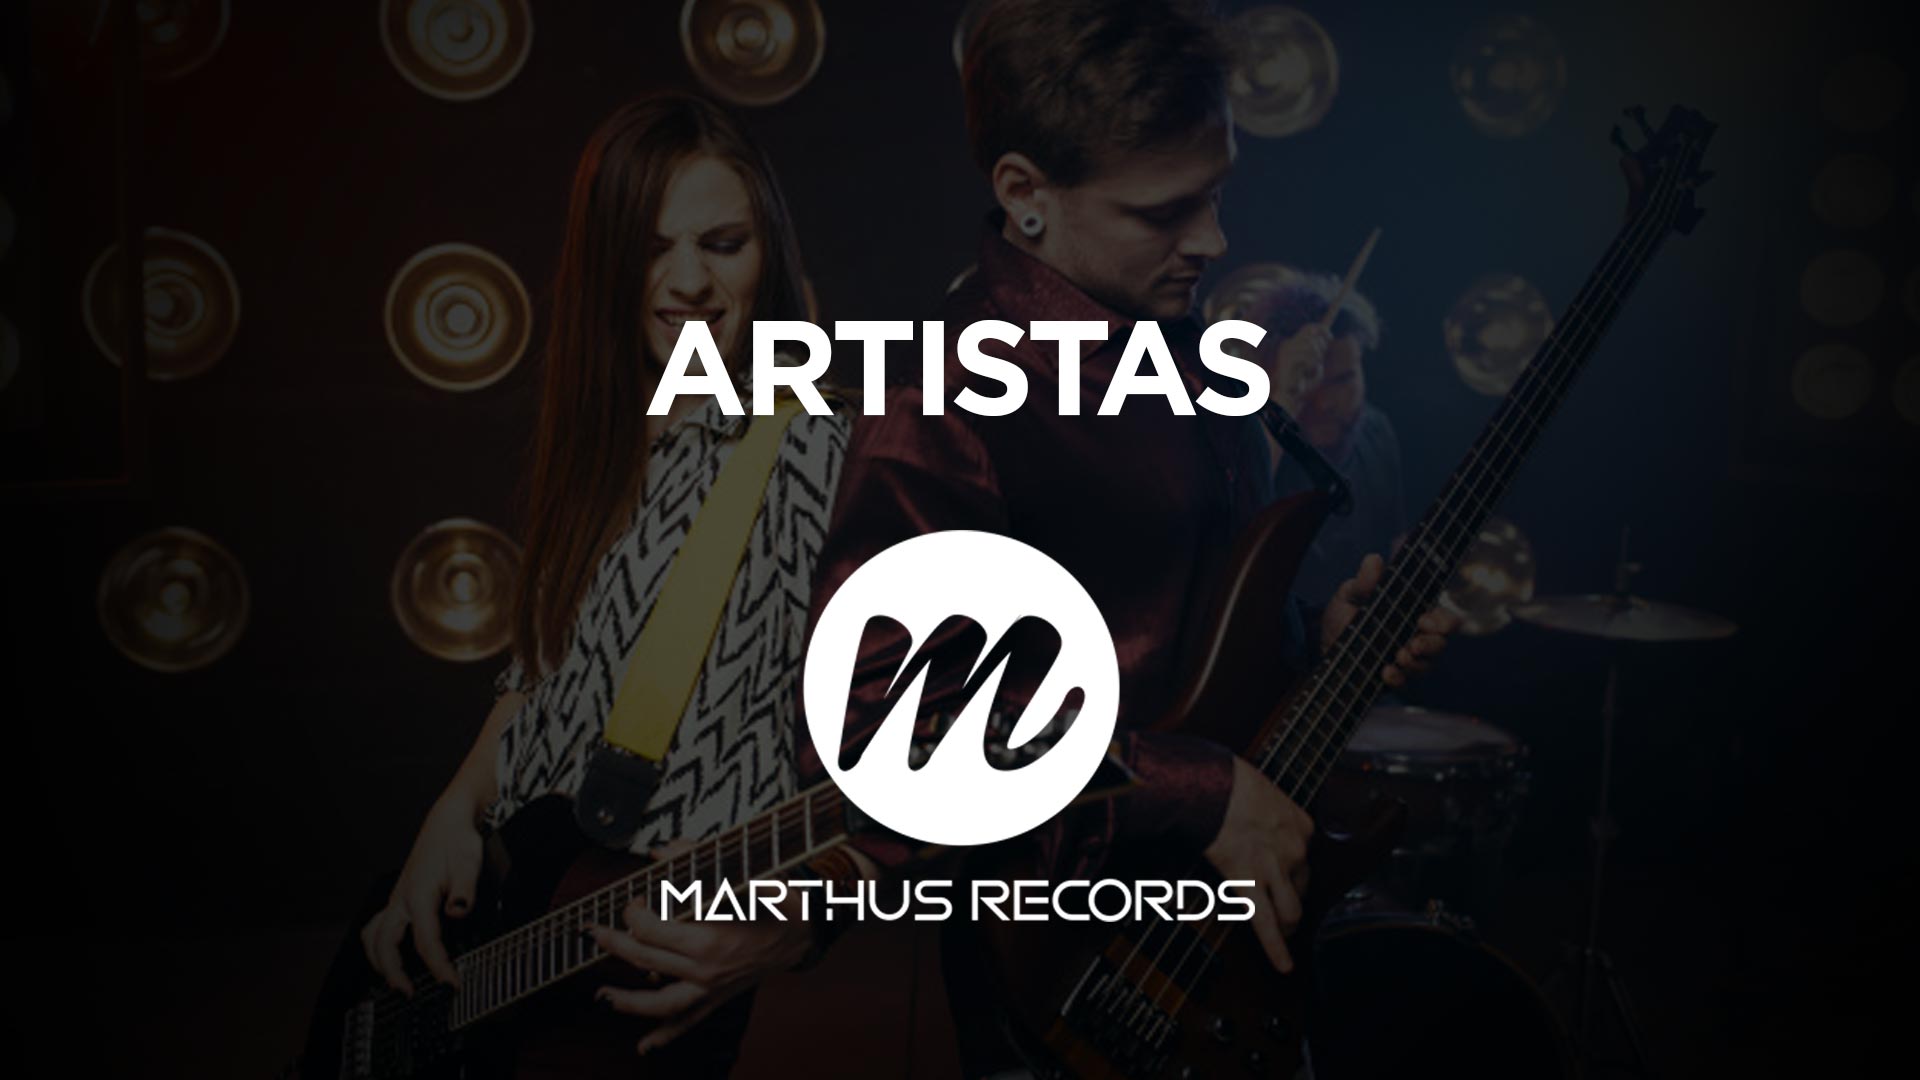 Marthus Records